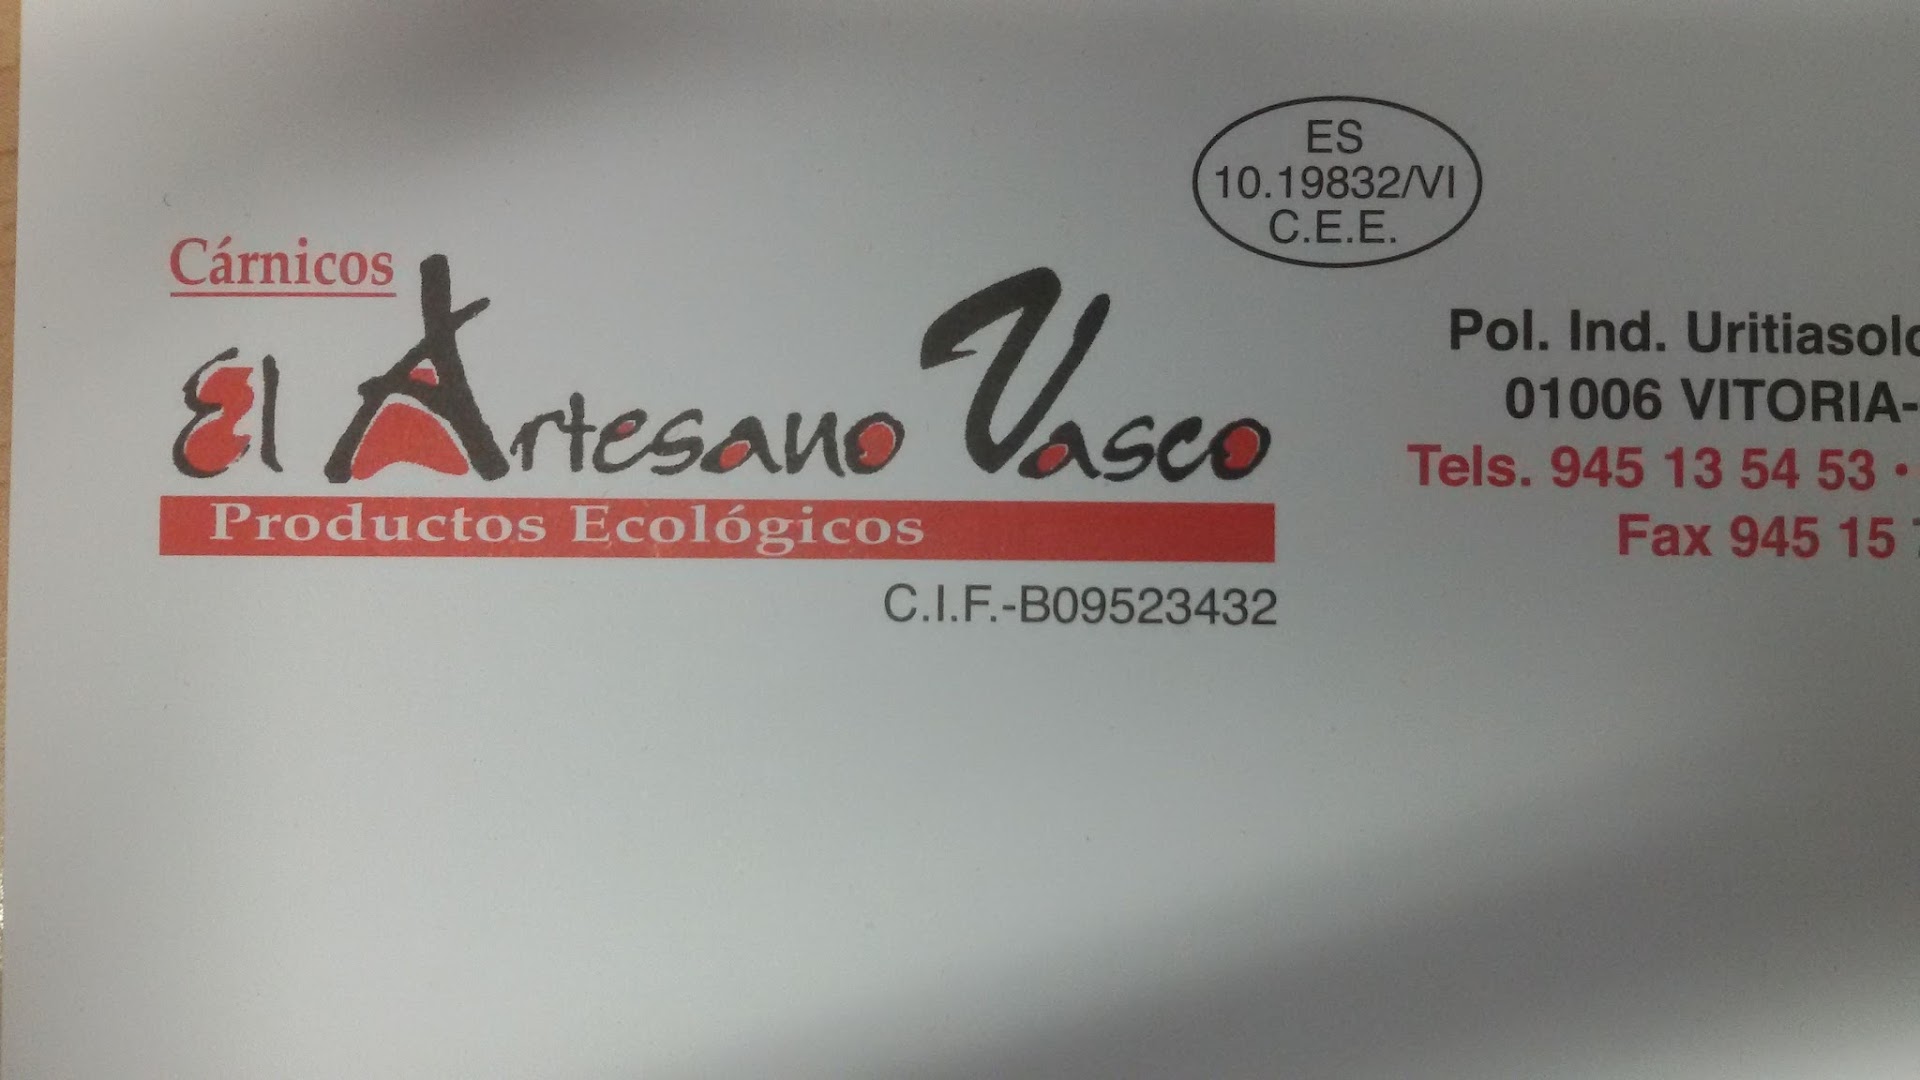 El Artesano Vasco S.L